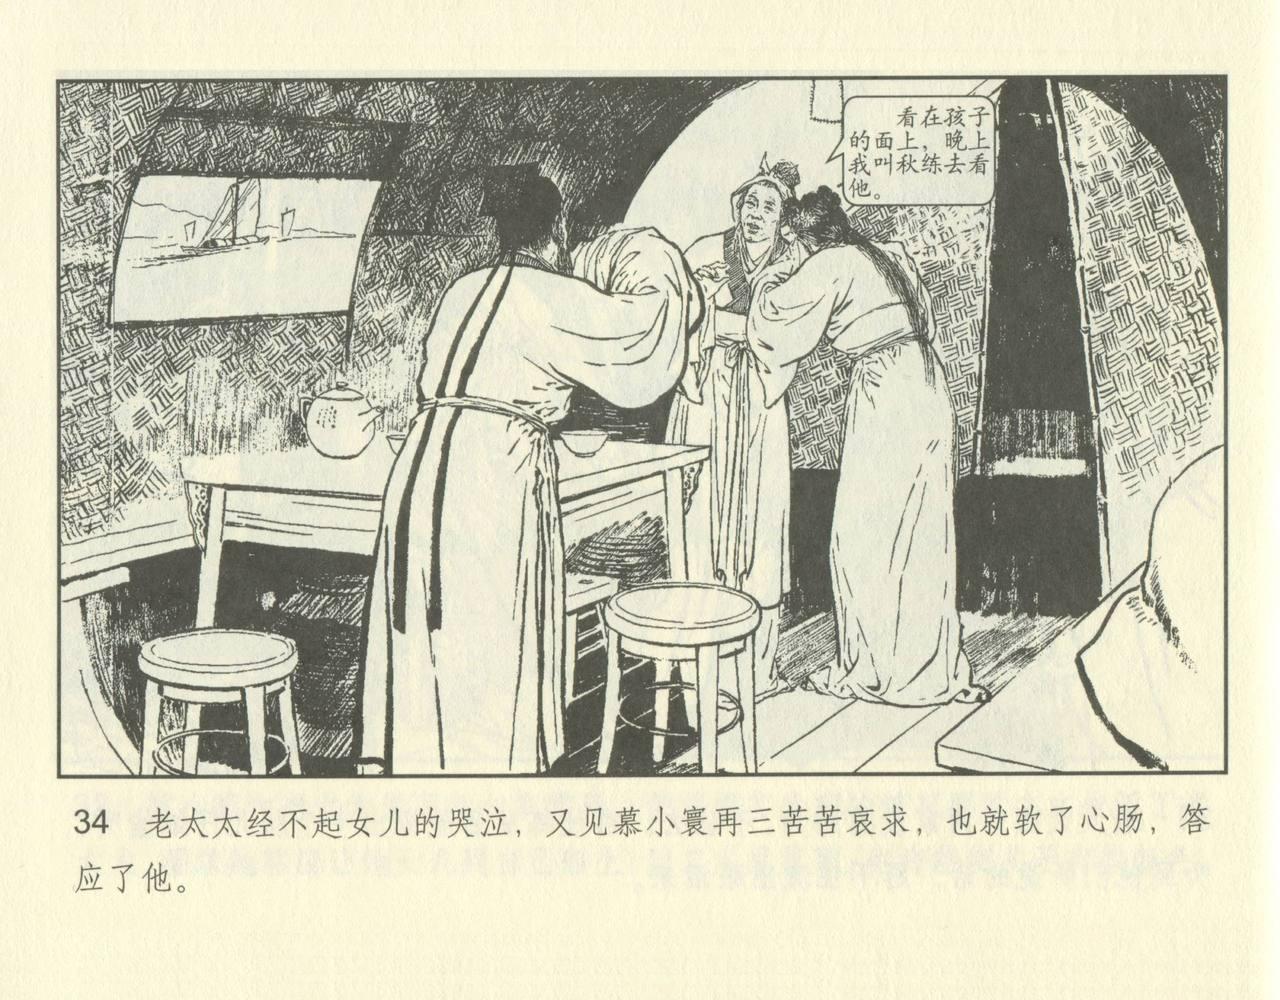 聊斋志异 张玮等绘 天津人民美术出版社 卷二十一 ~ 三十 83